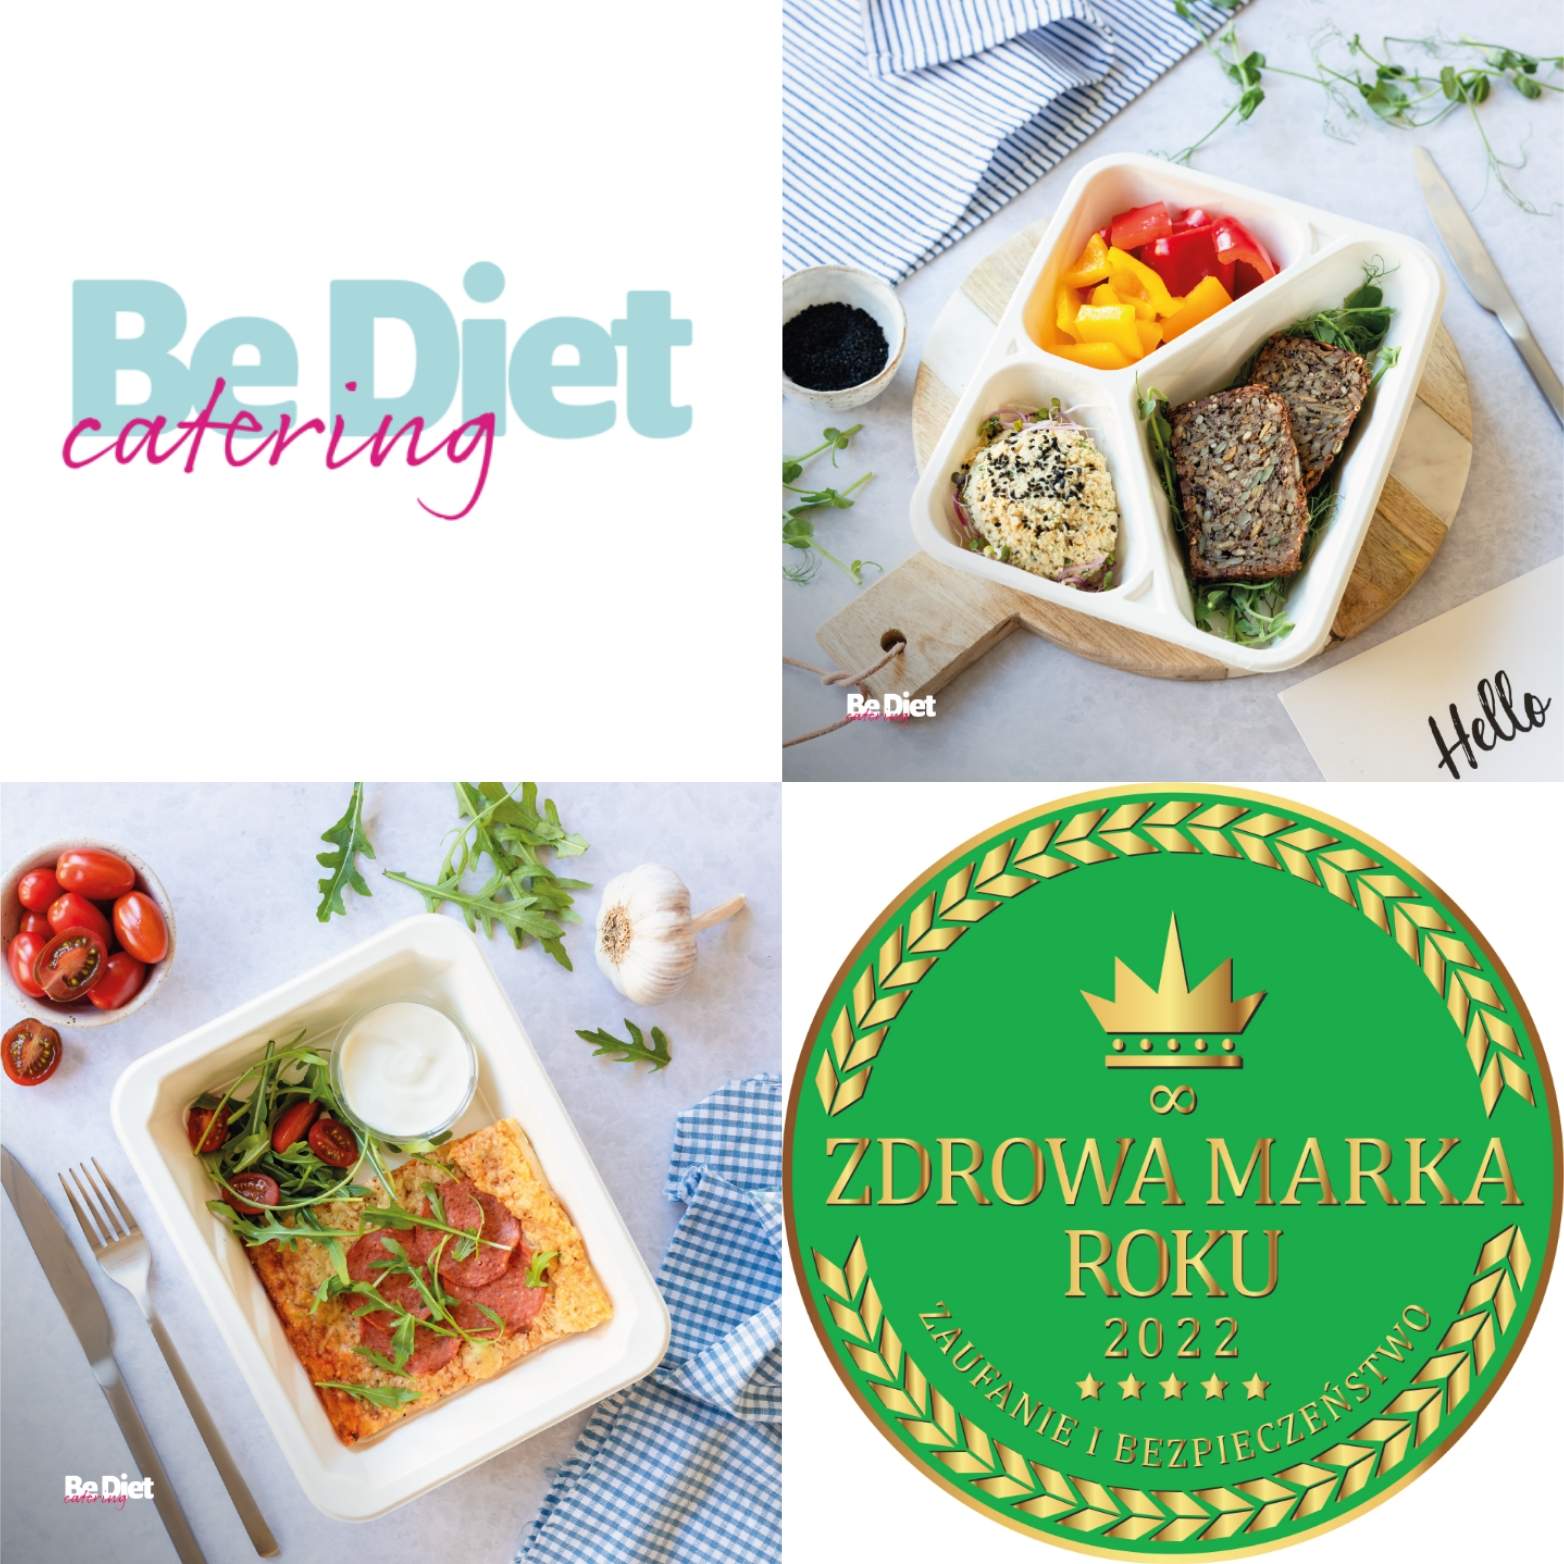 Be Diet Catering Ewy Chodakowskiej z tytułem Zdrowa Marka Roku 2022!